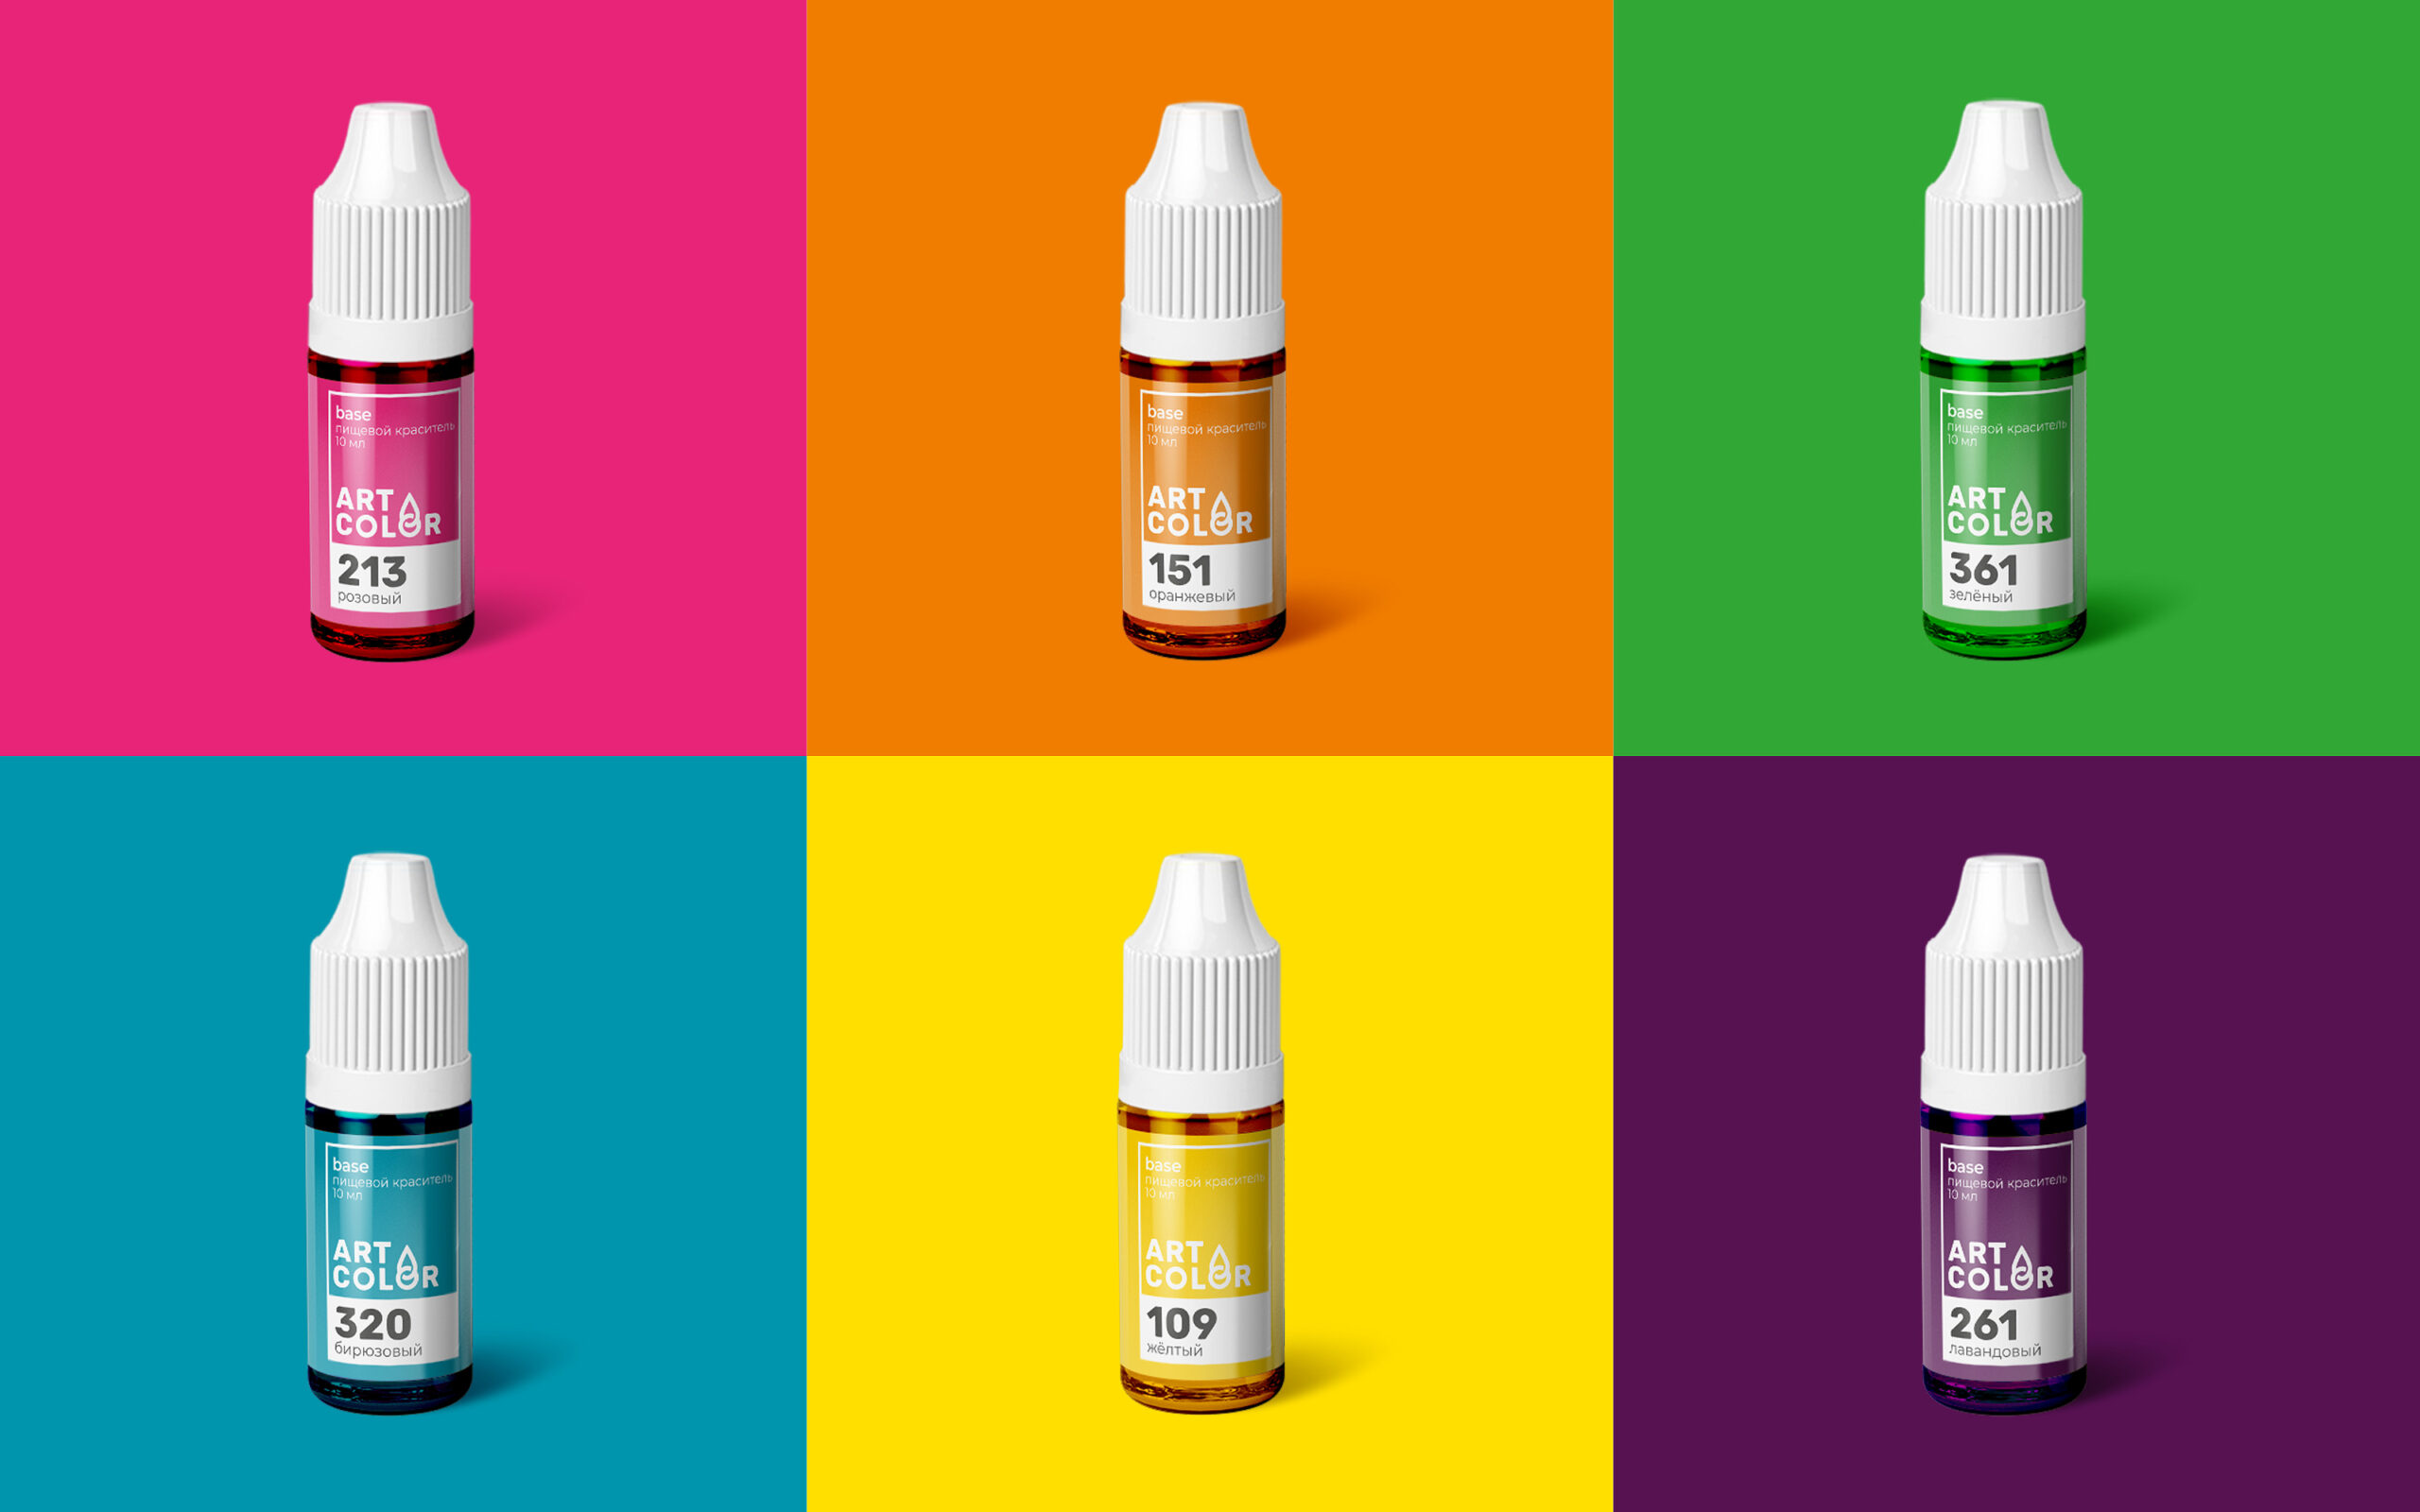 Дизайн логотипа и упаковки для бренда пищевых красителей Art Color